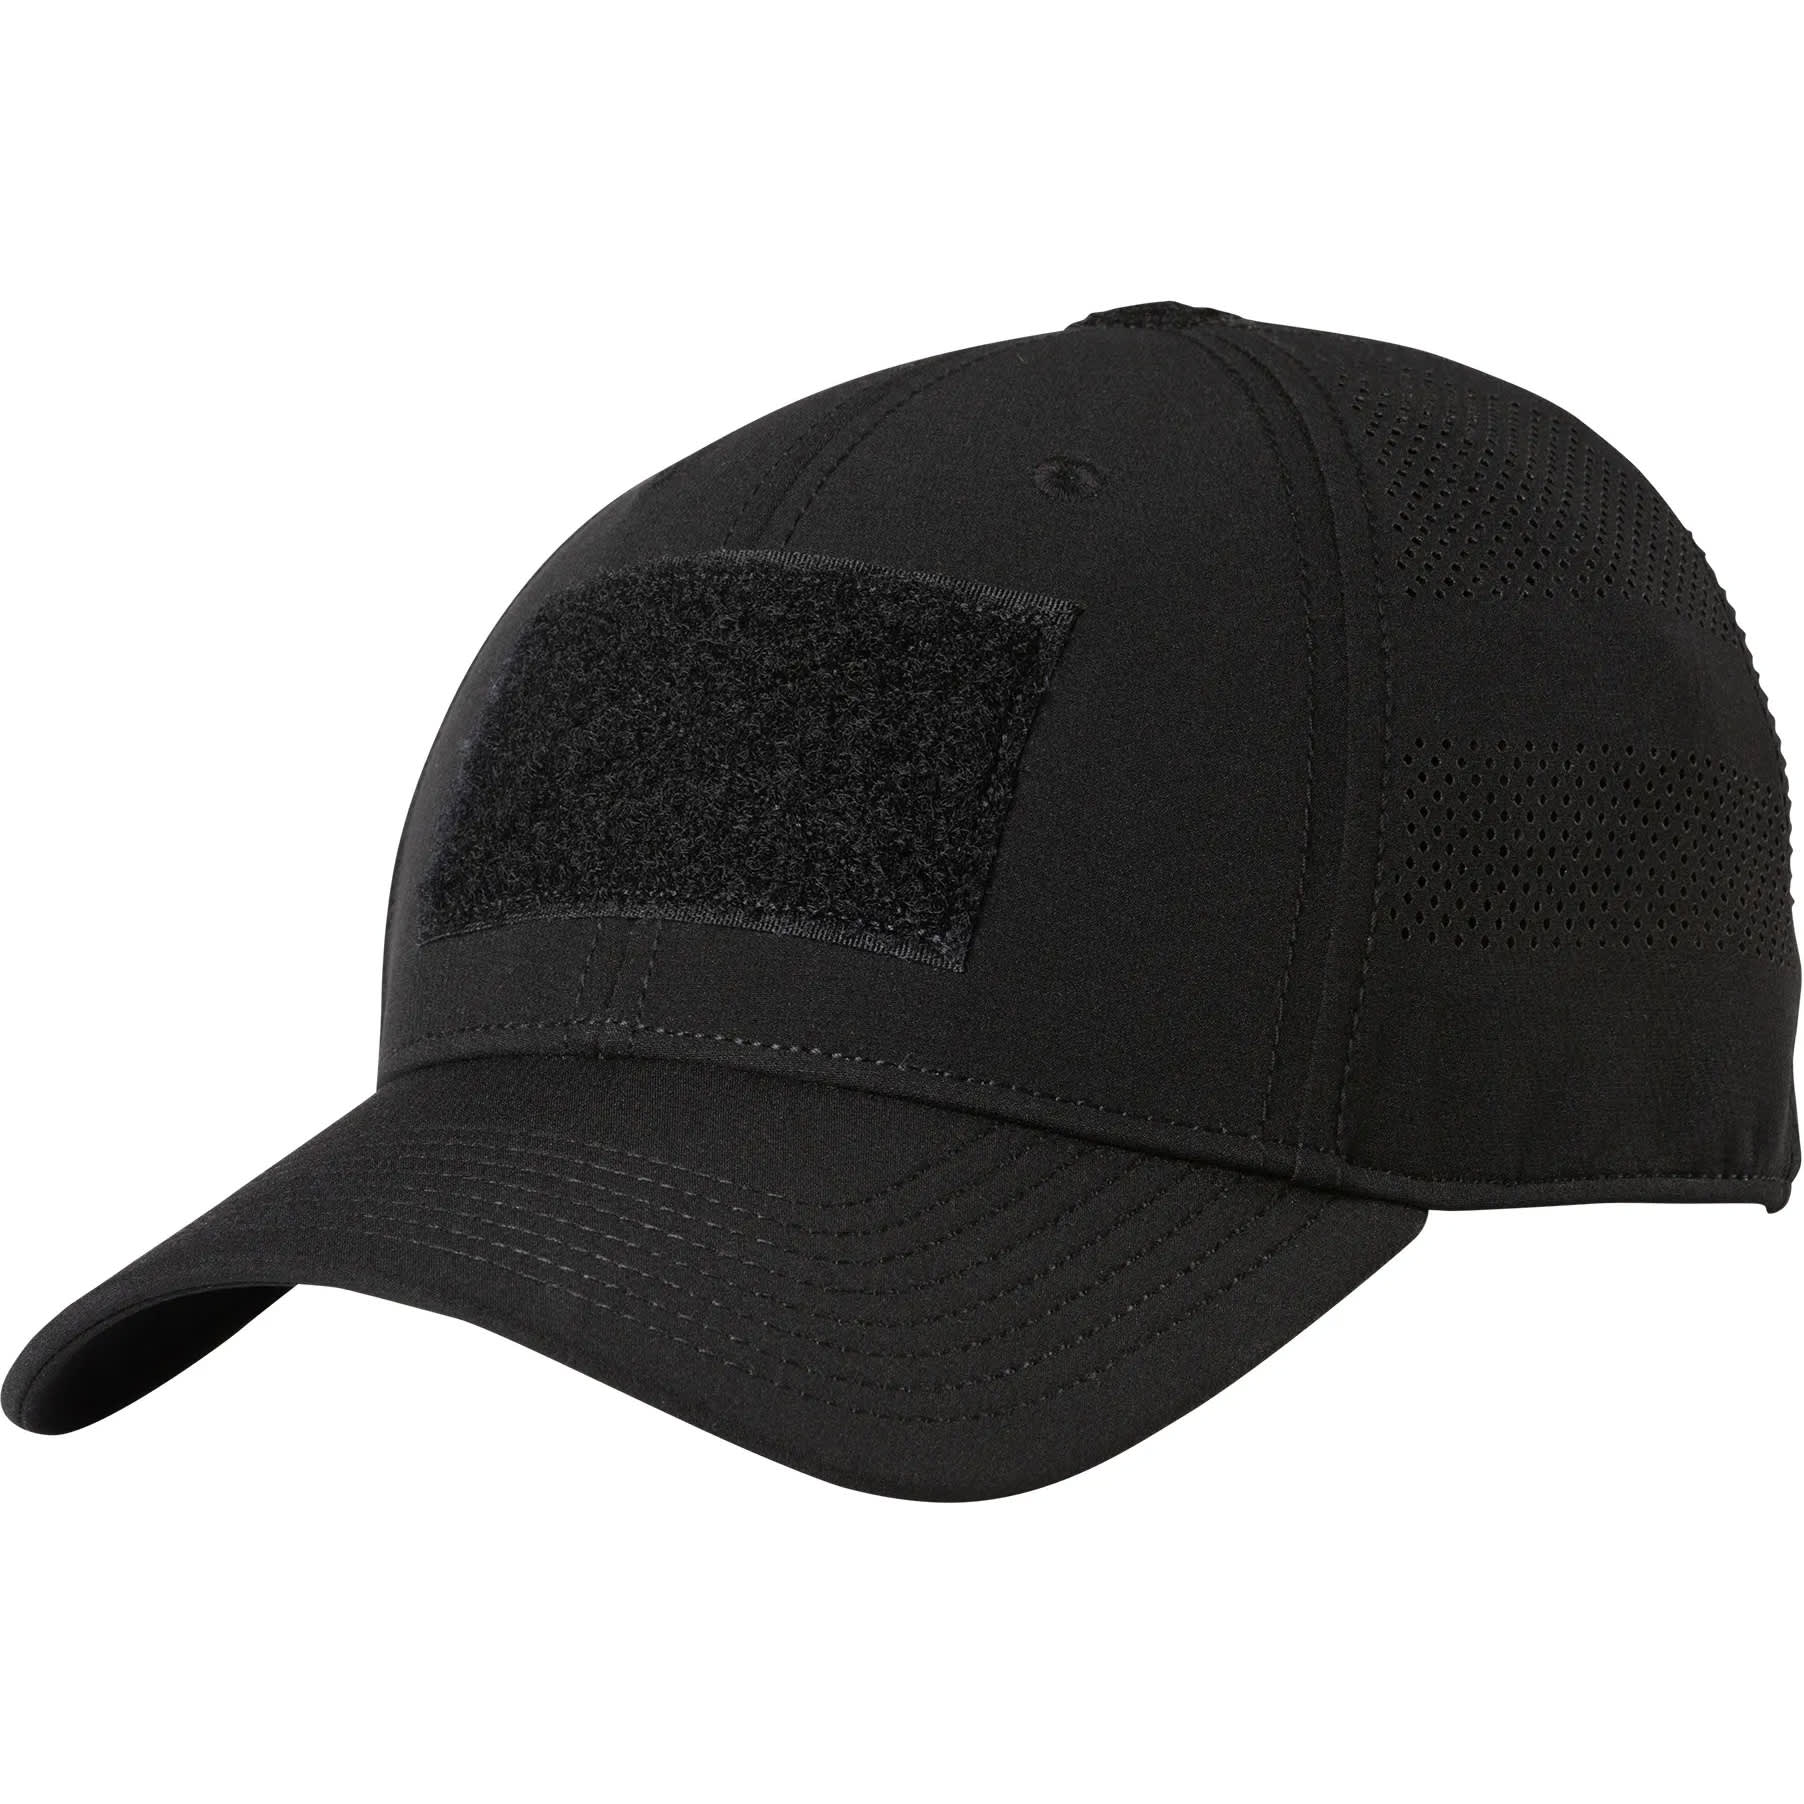 5.11® Men’s Vent-Tac™ Hat